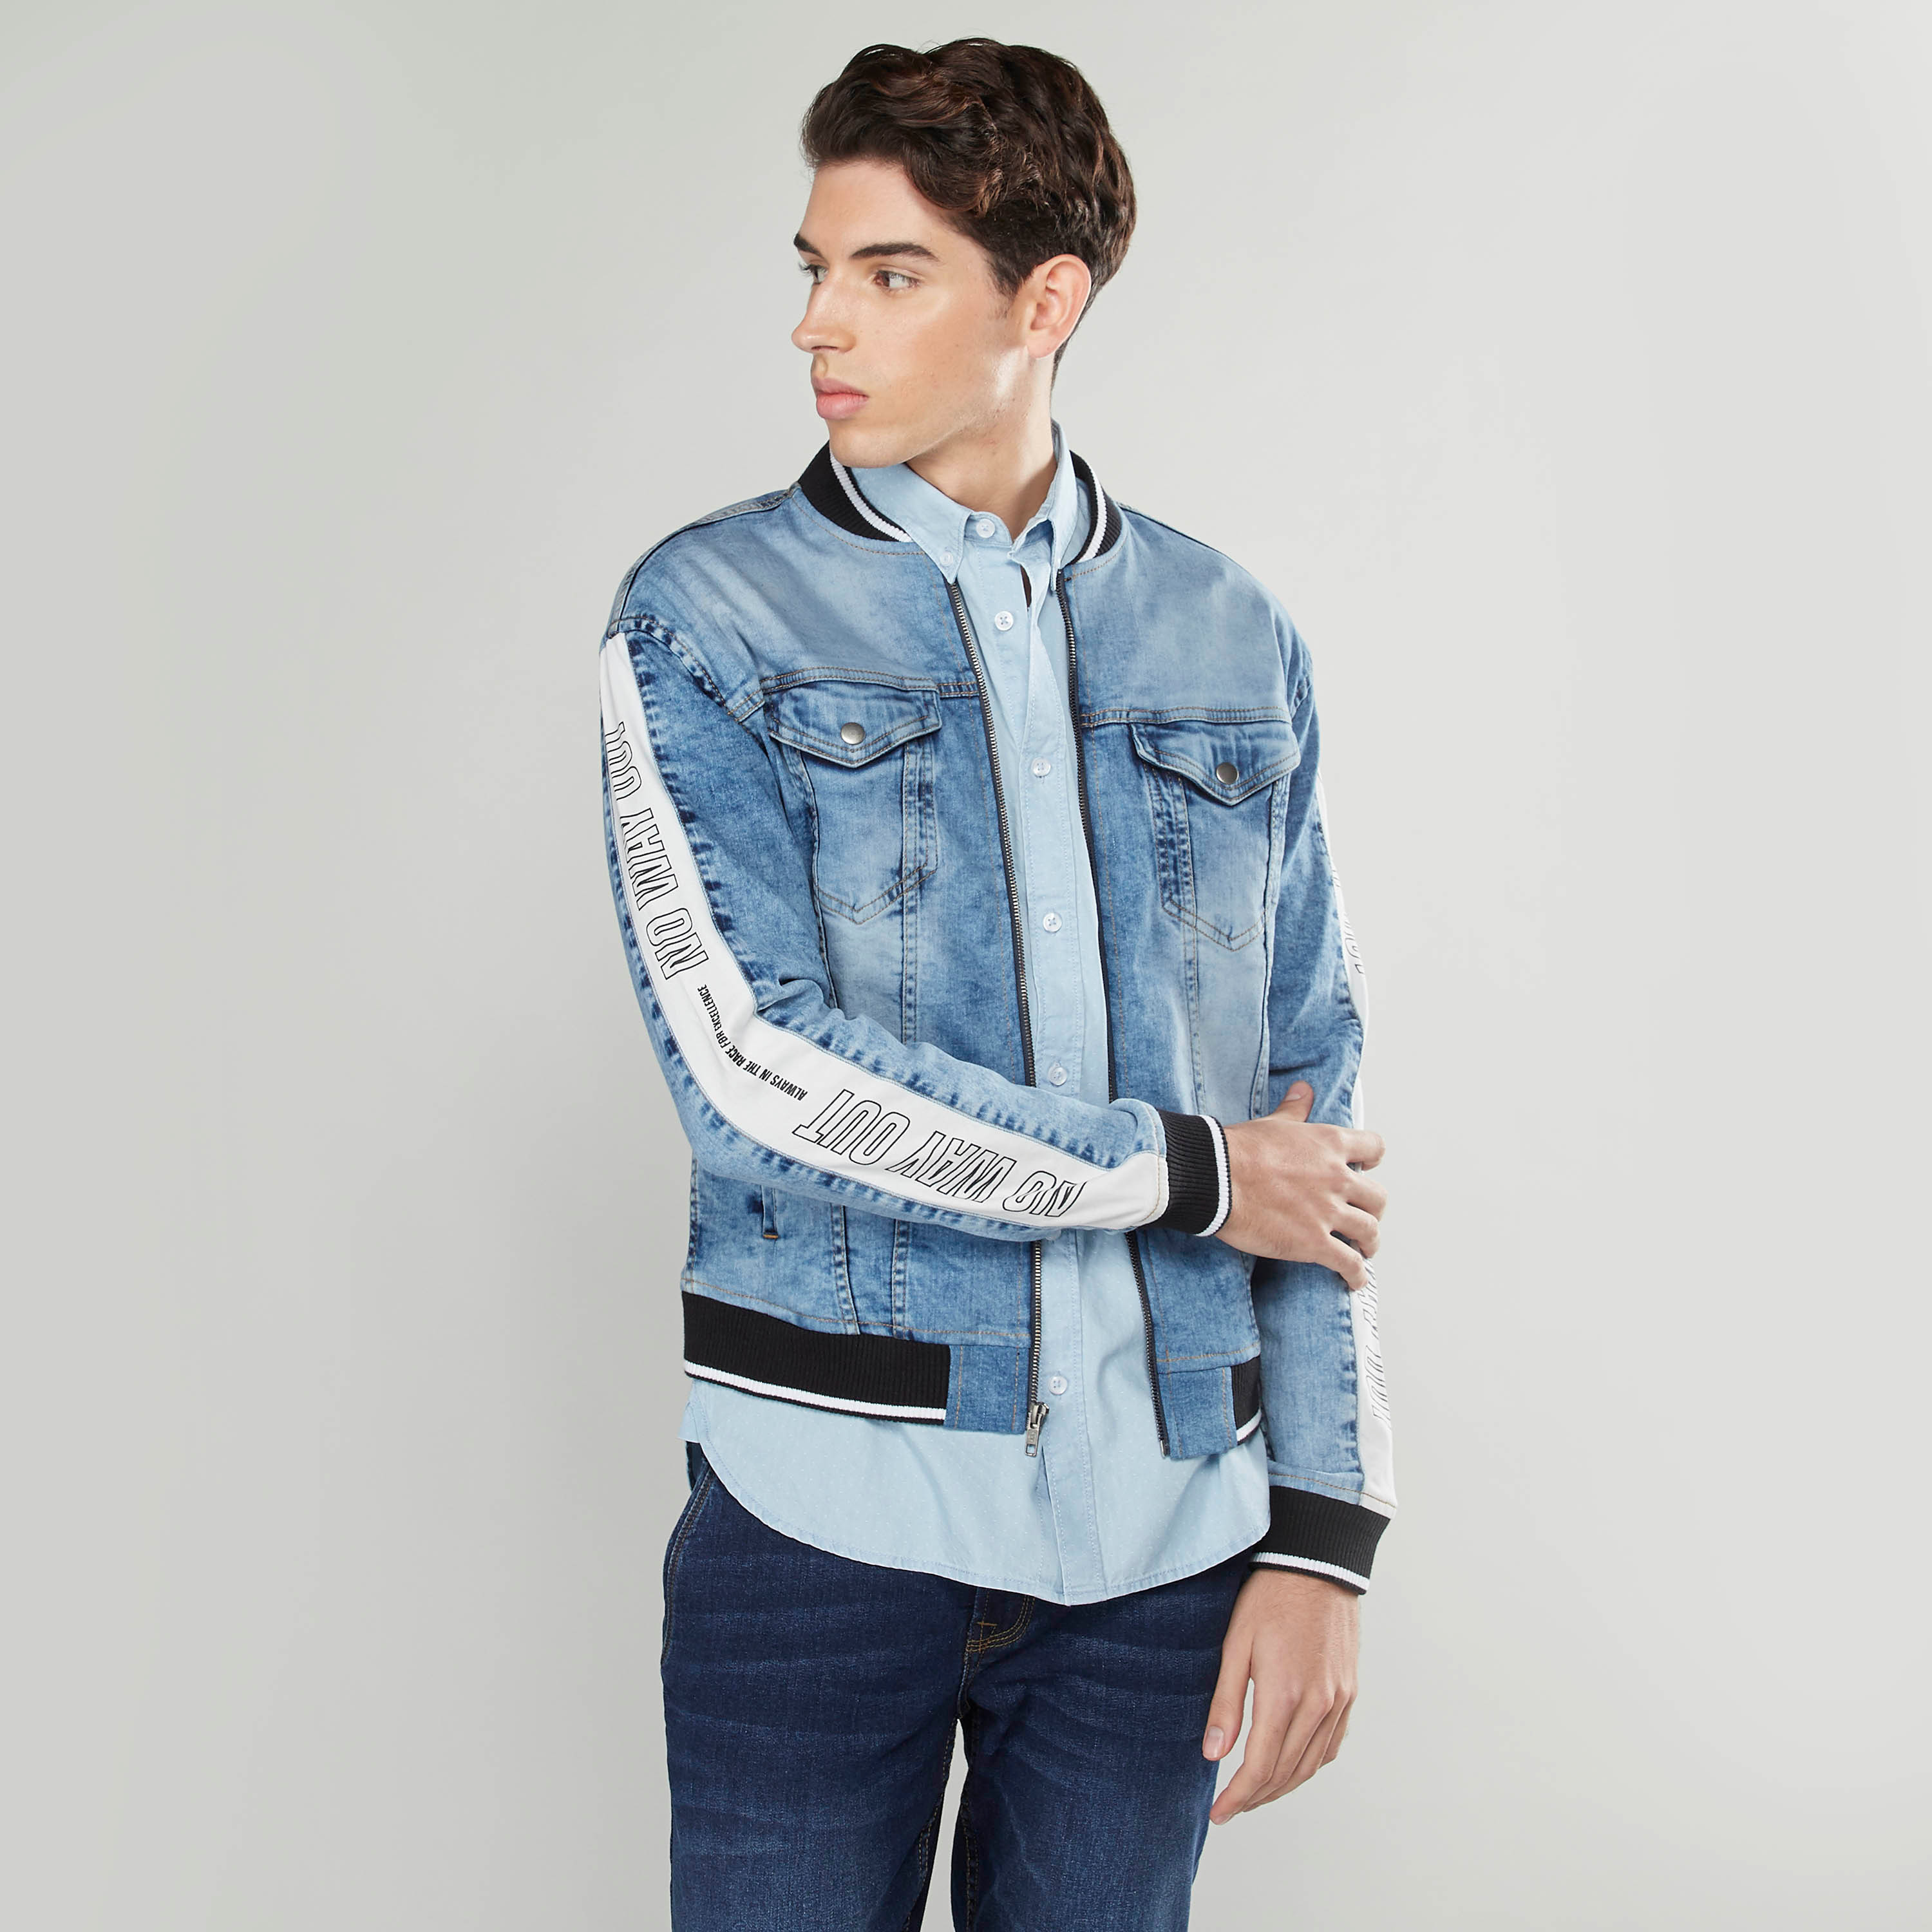 Buy VOXATI Blue Full Sleeves Mandarin Collar Denim Jacket for Men's Online  @ Tata CLiQ